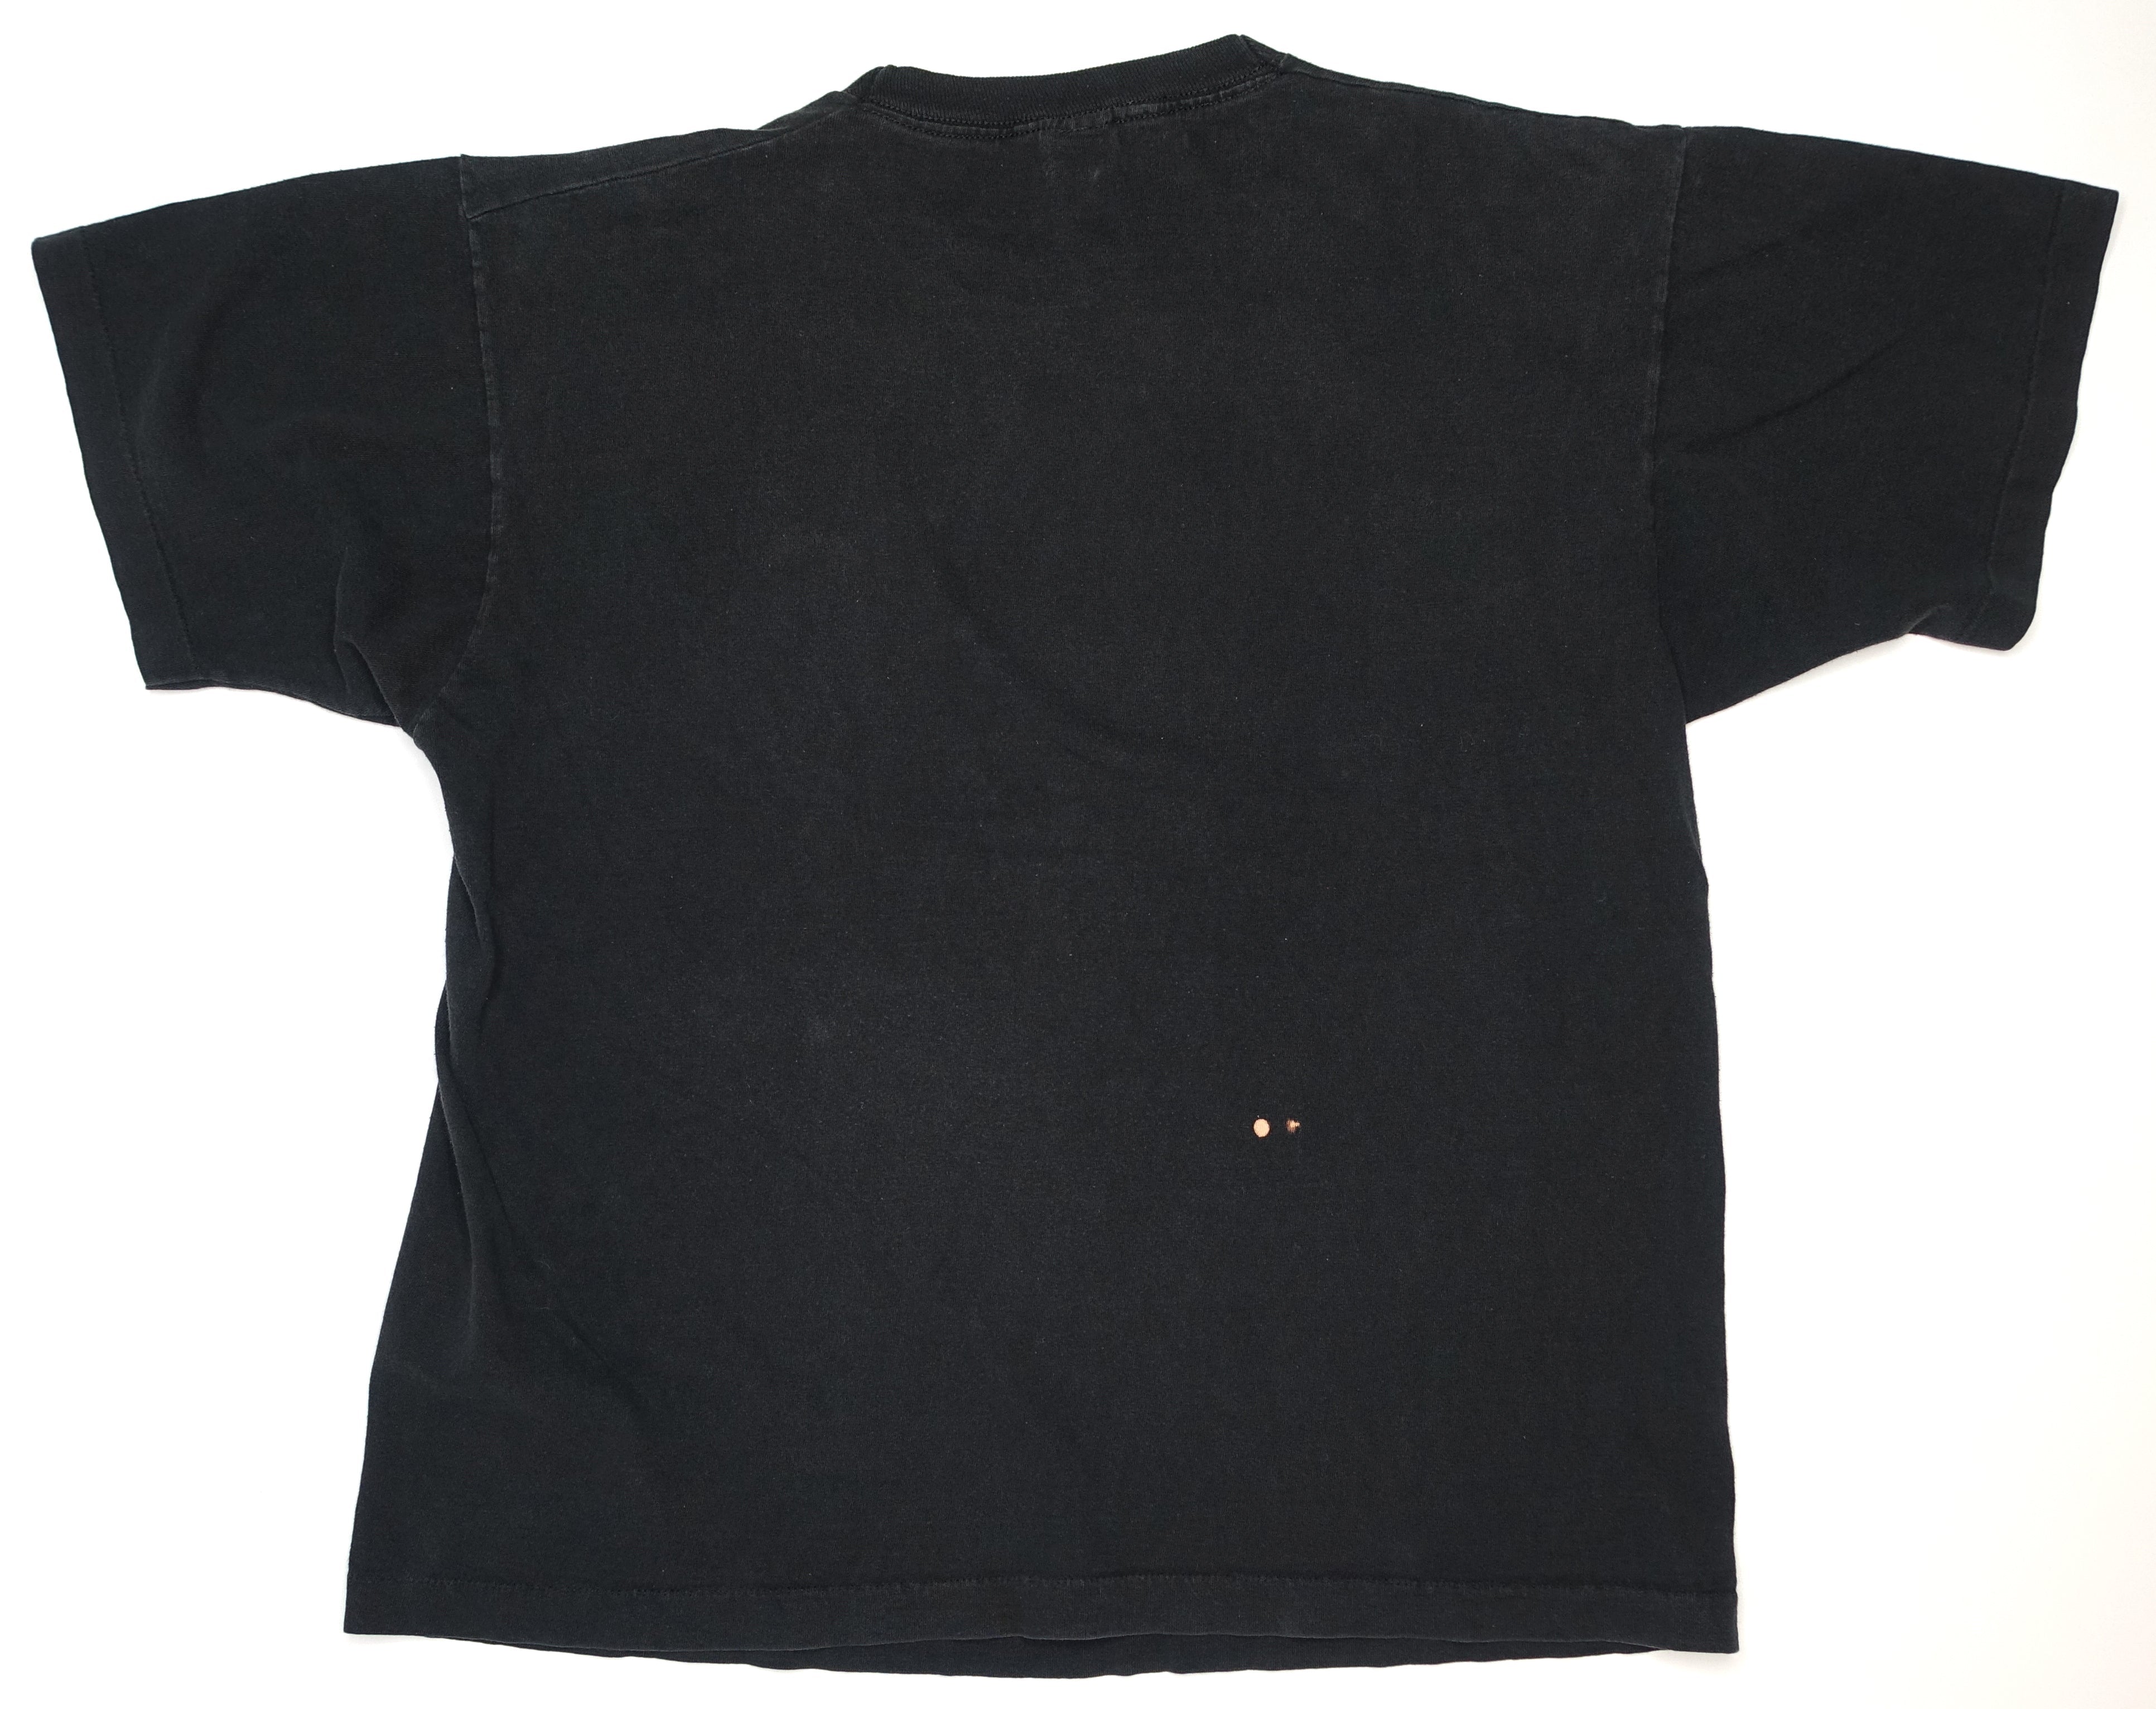 Didjits - Full Nelson Reilly 1991 Tour Shirt Size XL